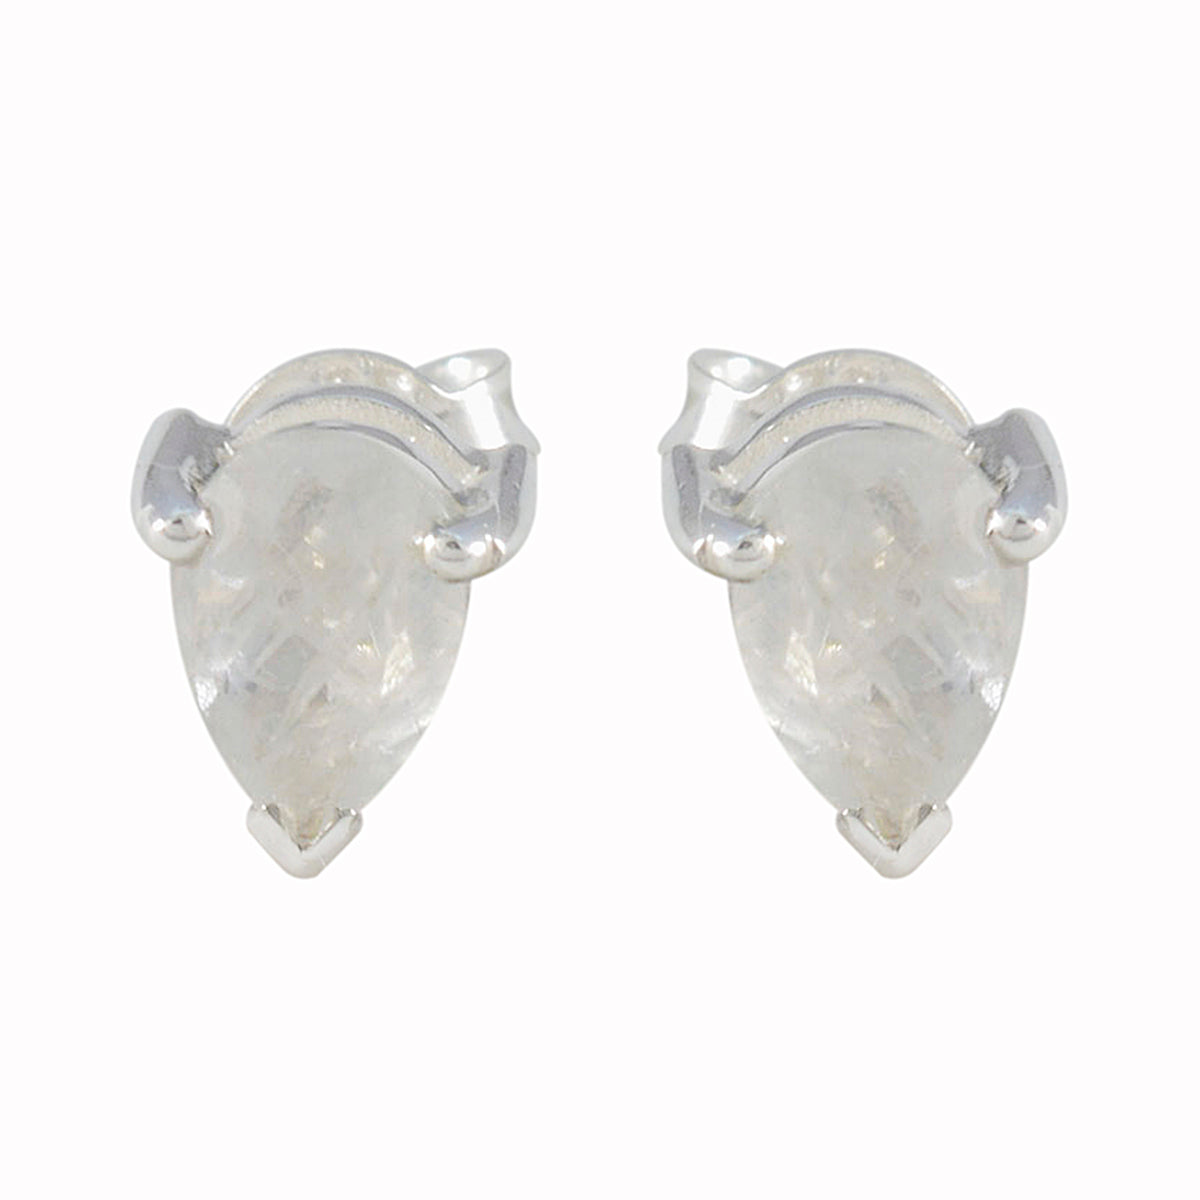 Riyo Bezaubernder 925er Sterlingsilber-Ohrring für Damen, Regenbogen-Mondstein-Ohrring, Lünettenfassung, weißer Ohrring-Bolzen-Ohrring